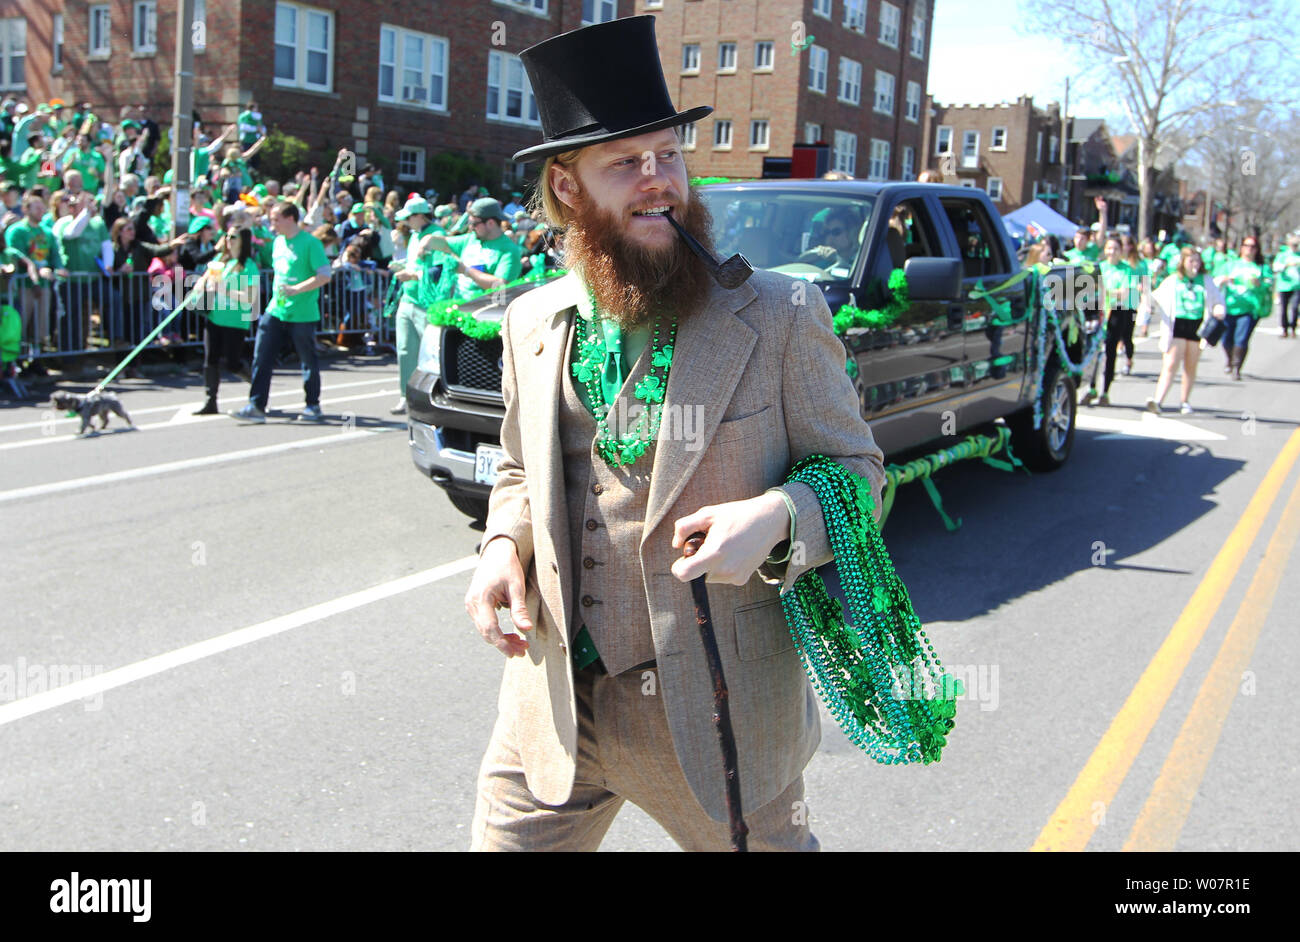 Eine Parade Teilnehmer Kleider wie ein Kobold, werfen Perlen als er marschiert in den alten Auftrag von Hibernians St. Patricks Day Parade in St. Louis am 17. März 2015. Foto von Bill Greenblatt/UPI Stockfoto